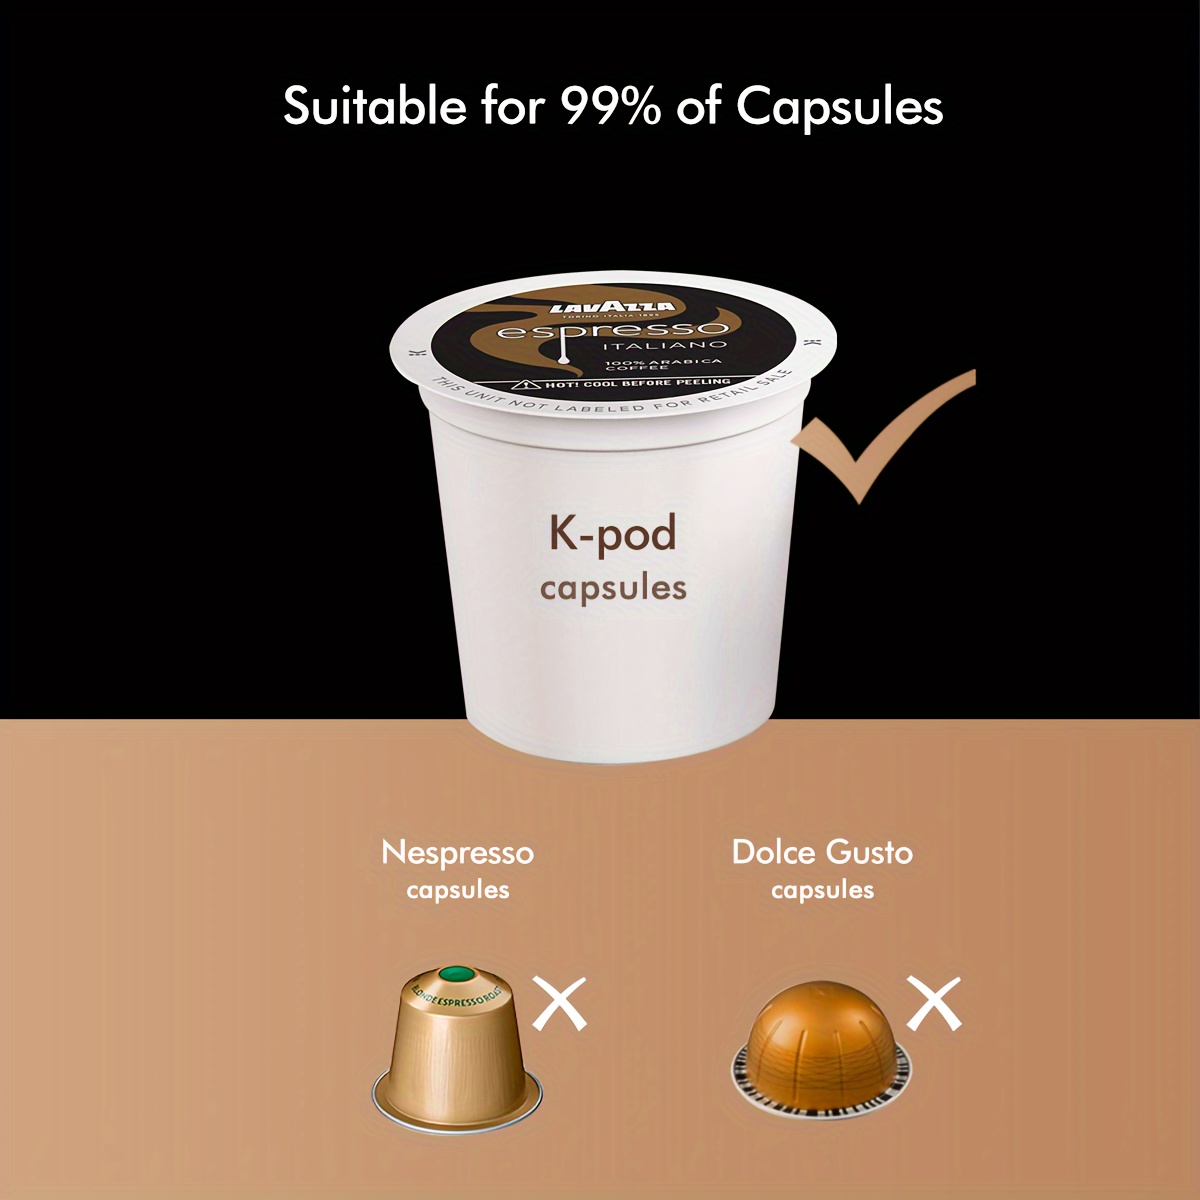 Test Cafetière Chulux : simple, rapide et compatible avec les capsules  Nespresso et Dolce Gusto - Les Numériques